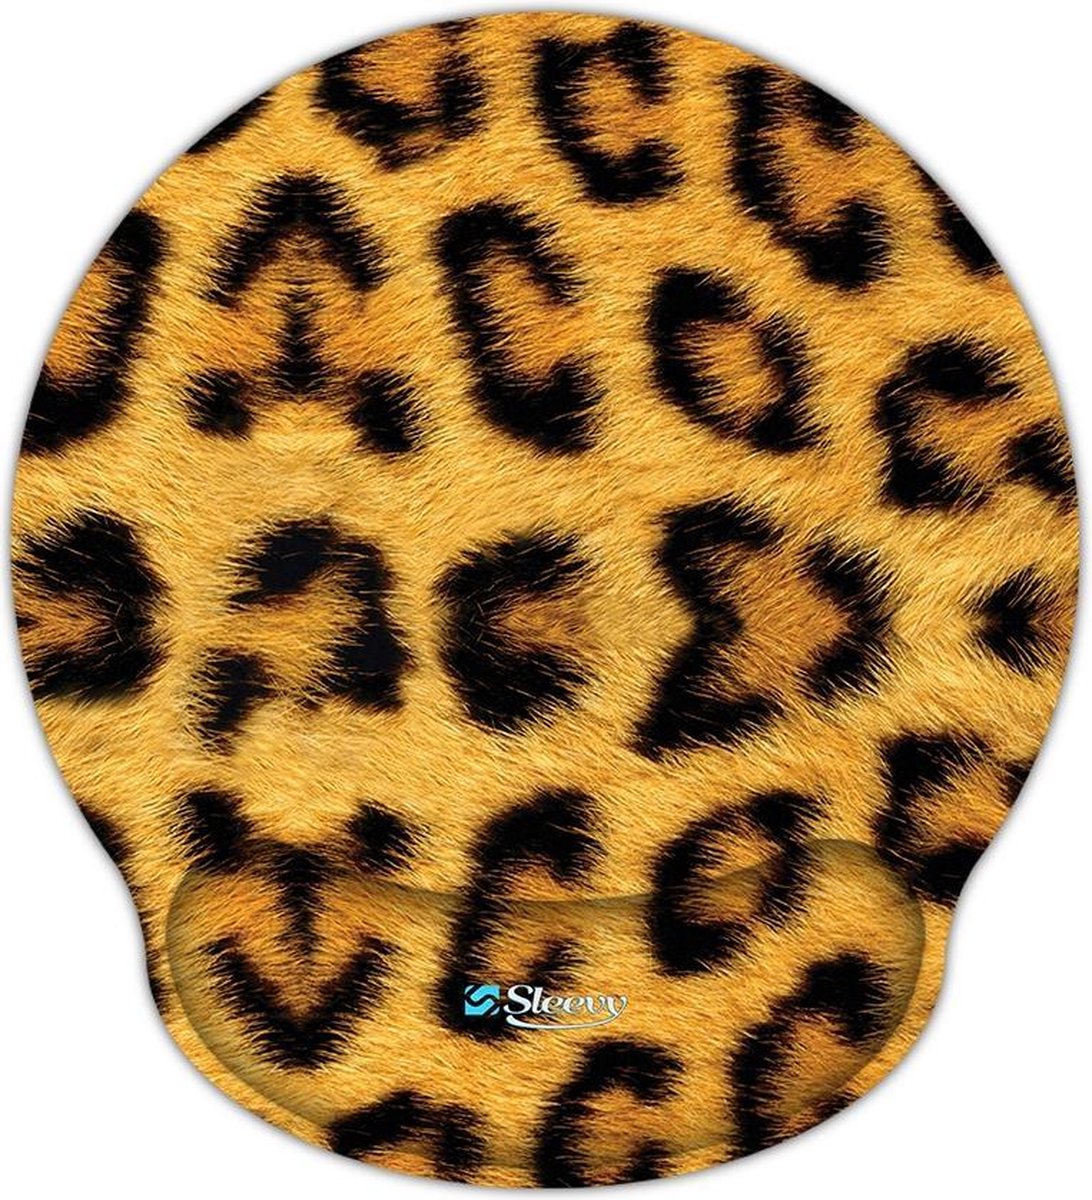 Muismat polssteun luipaard print - Sleevy - mousepad - Collectie 100+ designs